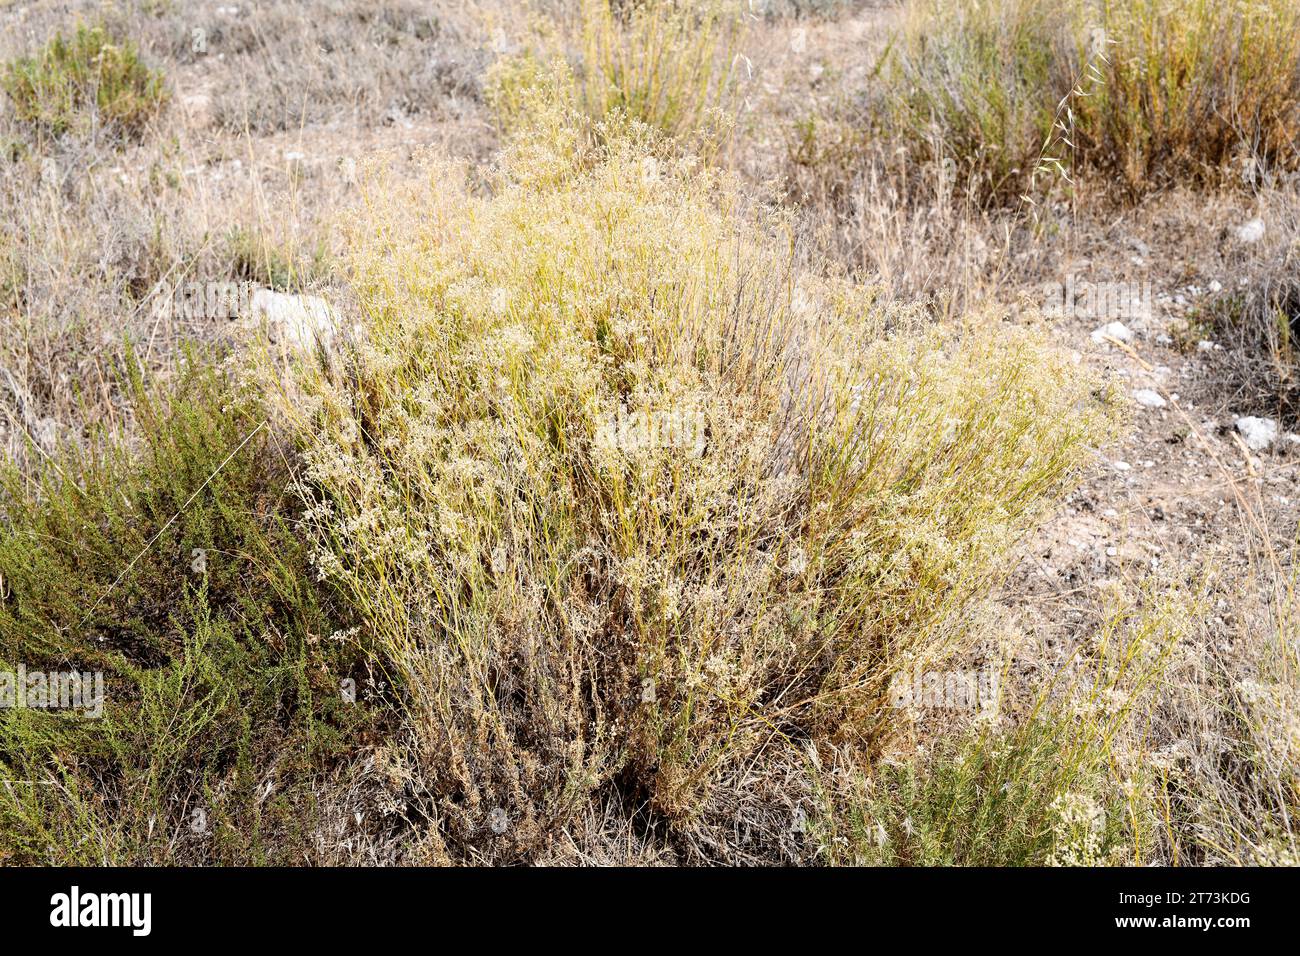 Albada (Gypsophila struthium) ist ein in Zentral- und Ostspanien endemischer Unterstrauch. Wächst auf Gipsböden. Dieses Foto wurde in Urrea de Gaen, Teruel, aufgenommen Stockfoto